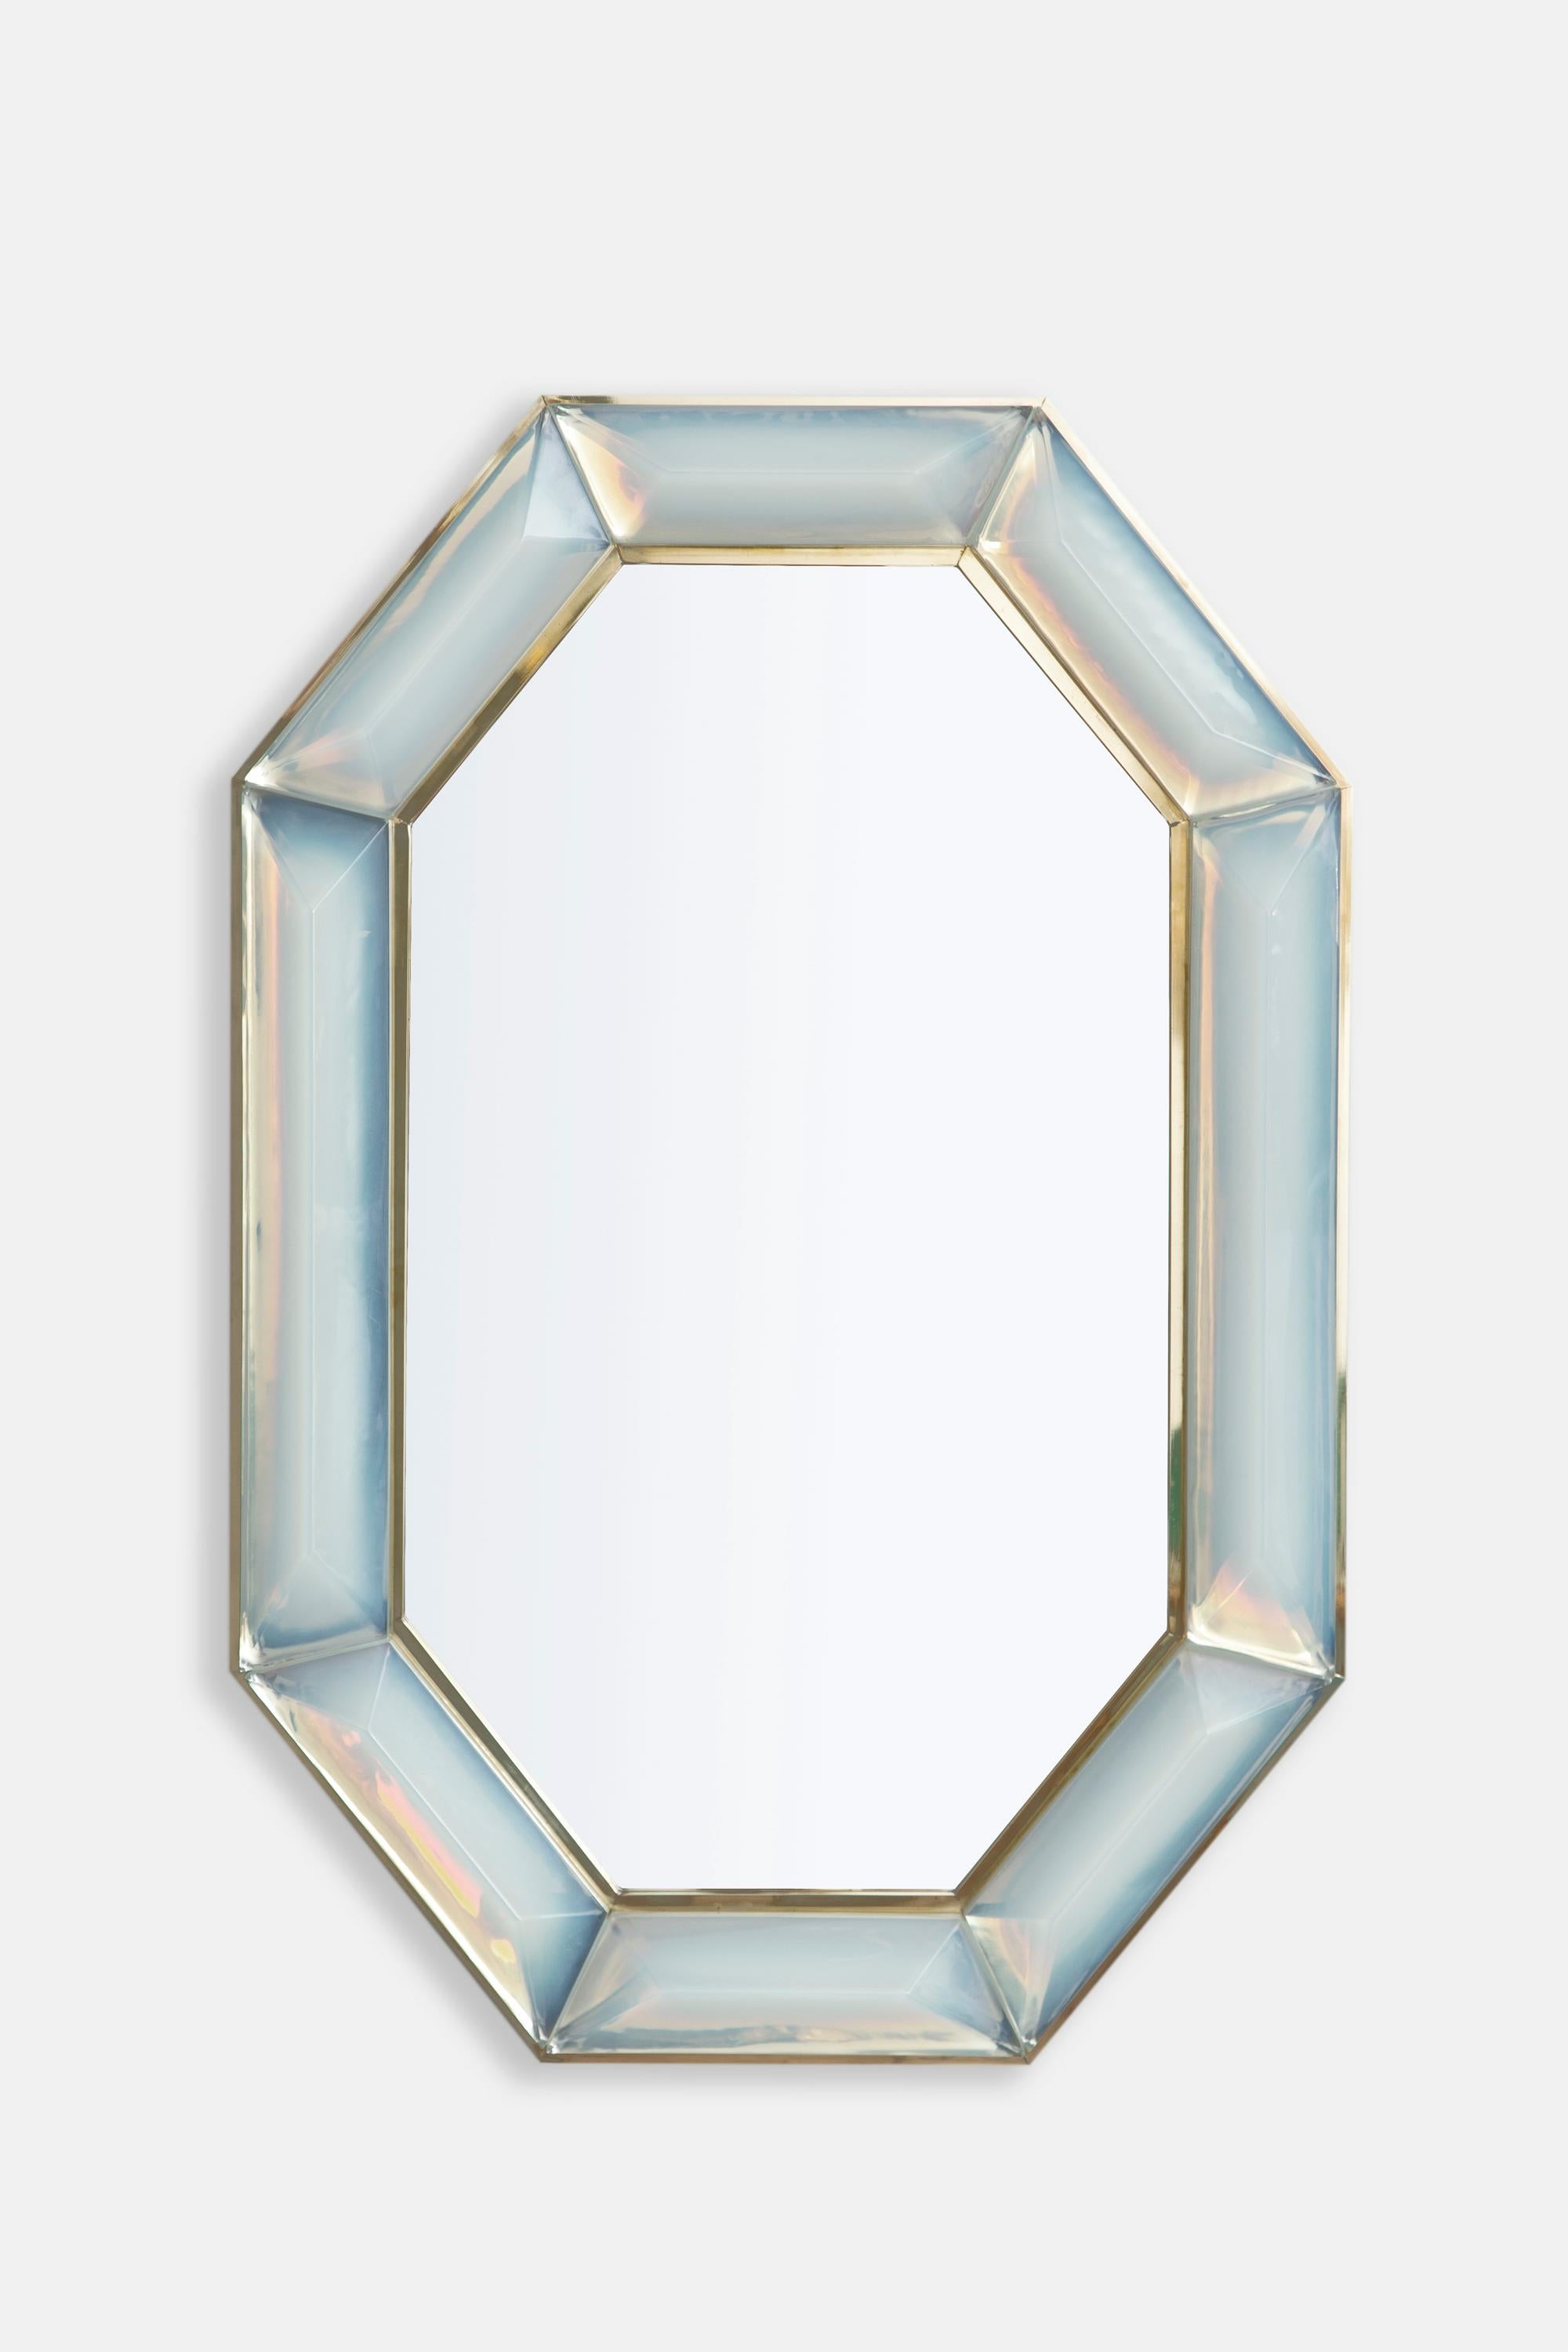 Achteckiger Spiegel aus irisierendem, opalem Murano-Glas nach Maß, auf Lager.
Lebendig und intensiv schillernder Opalglasstein mit natürlich vorkommenden Lufteinschlüssen.
Hochglanzpoliertes Facettenmuster.
Messing-Galerie rundherum.
Jeder Spiegel